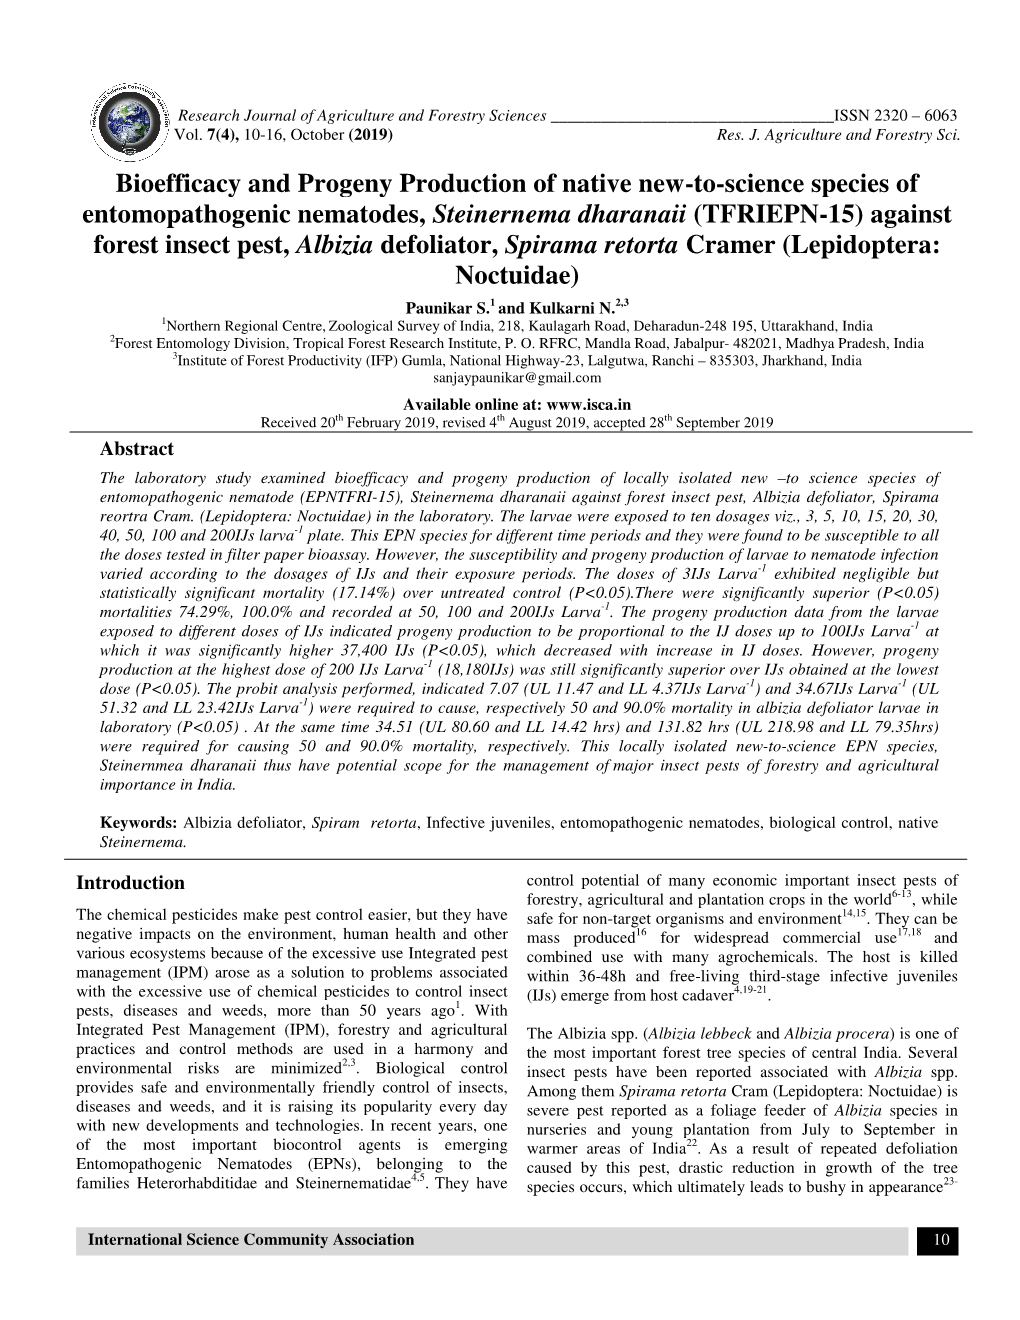 Bioefficacy and Progeny Production Entomopathogenic Nematodes, Forest Insect Pest, Albizia Defoliator, and Progeny Production Of